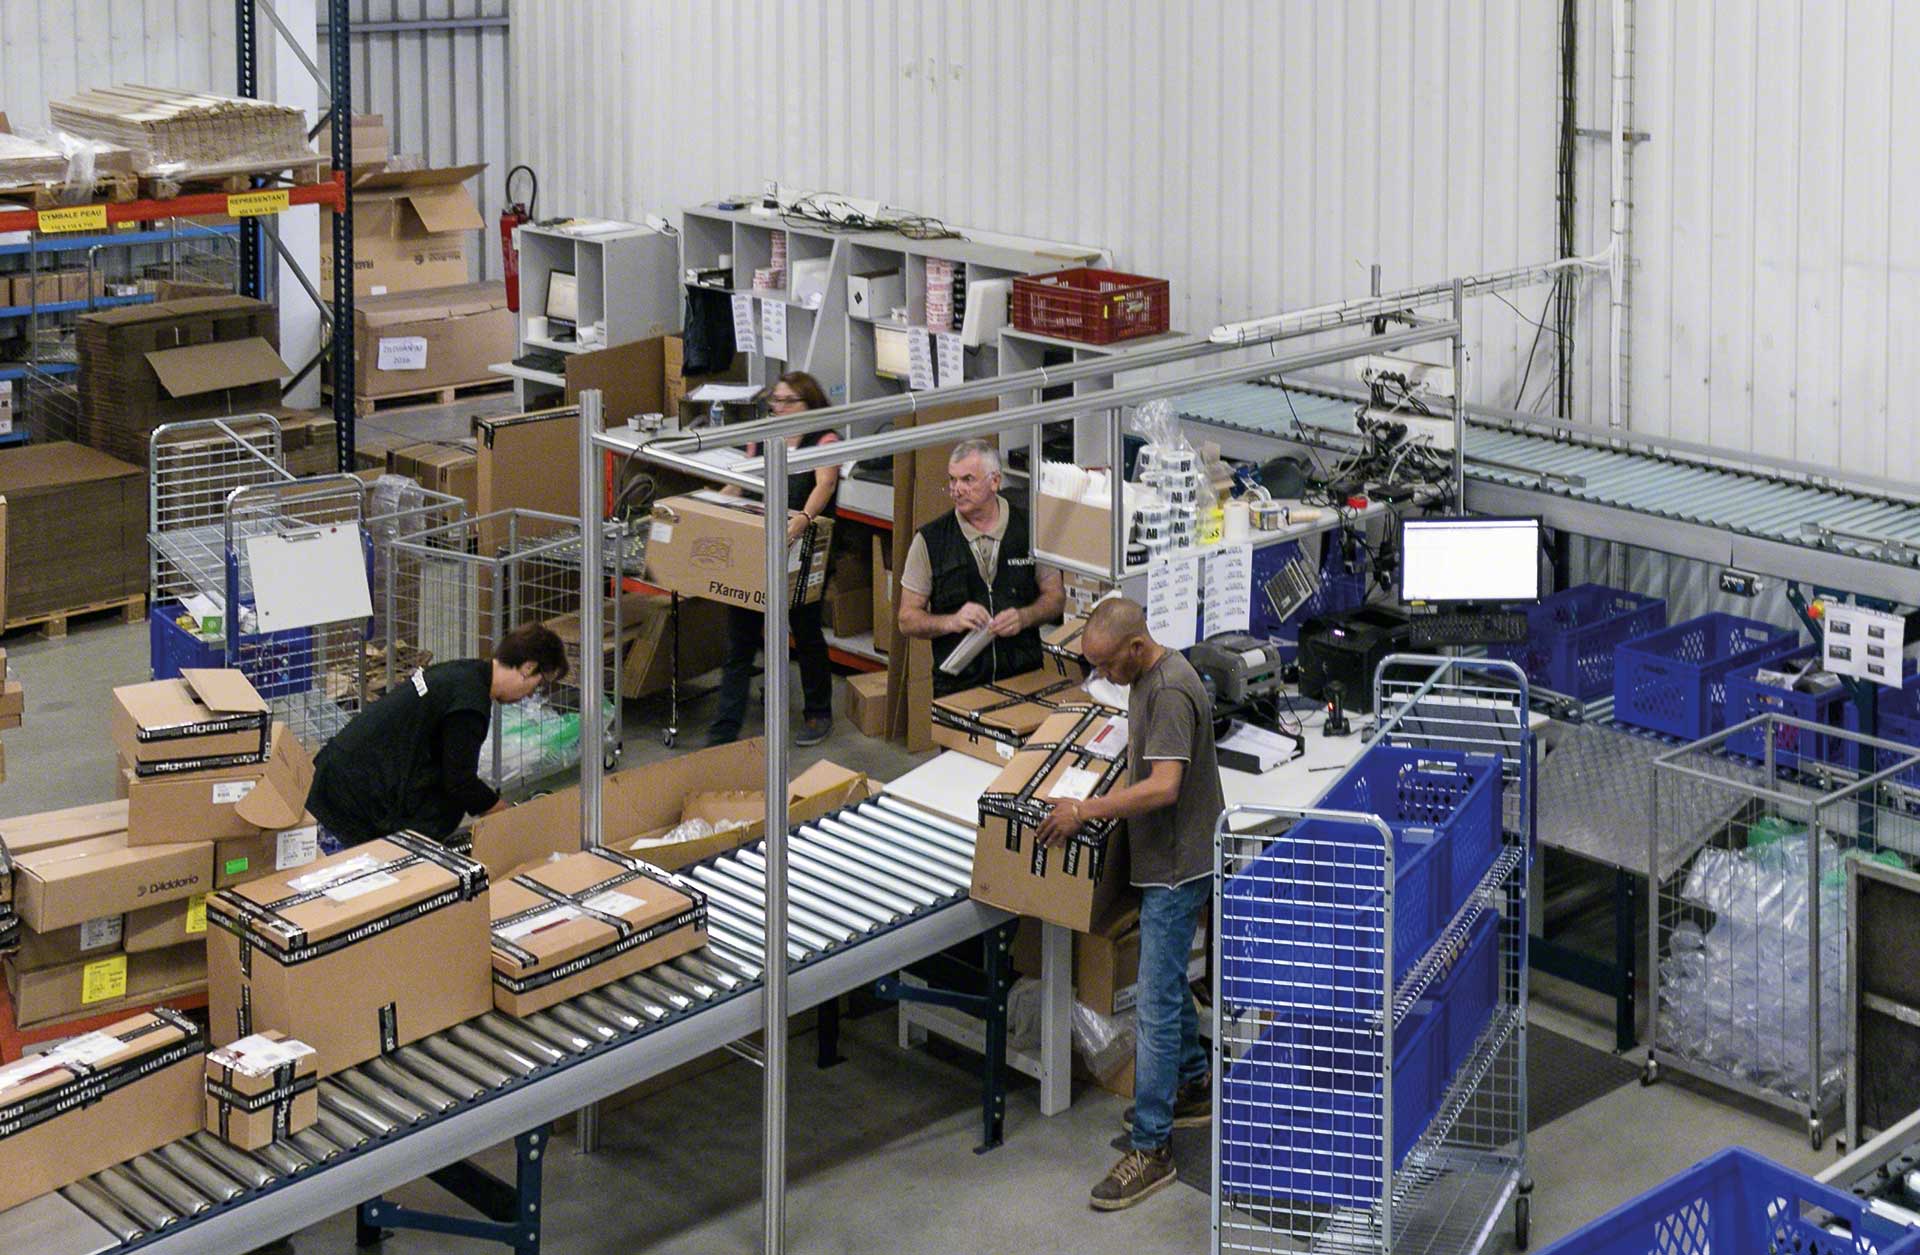 Warehouse workers preparing orders manually